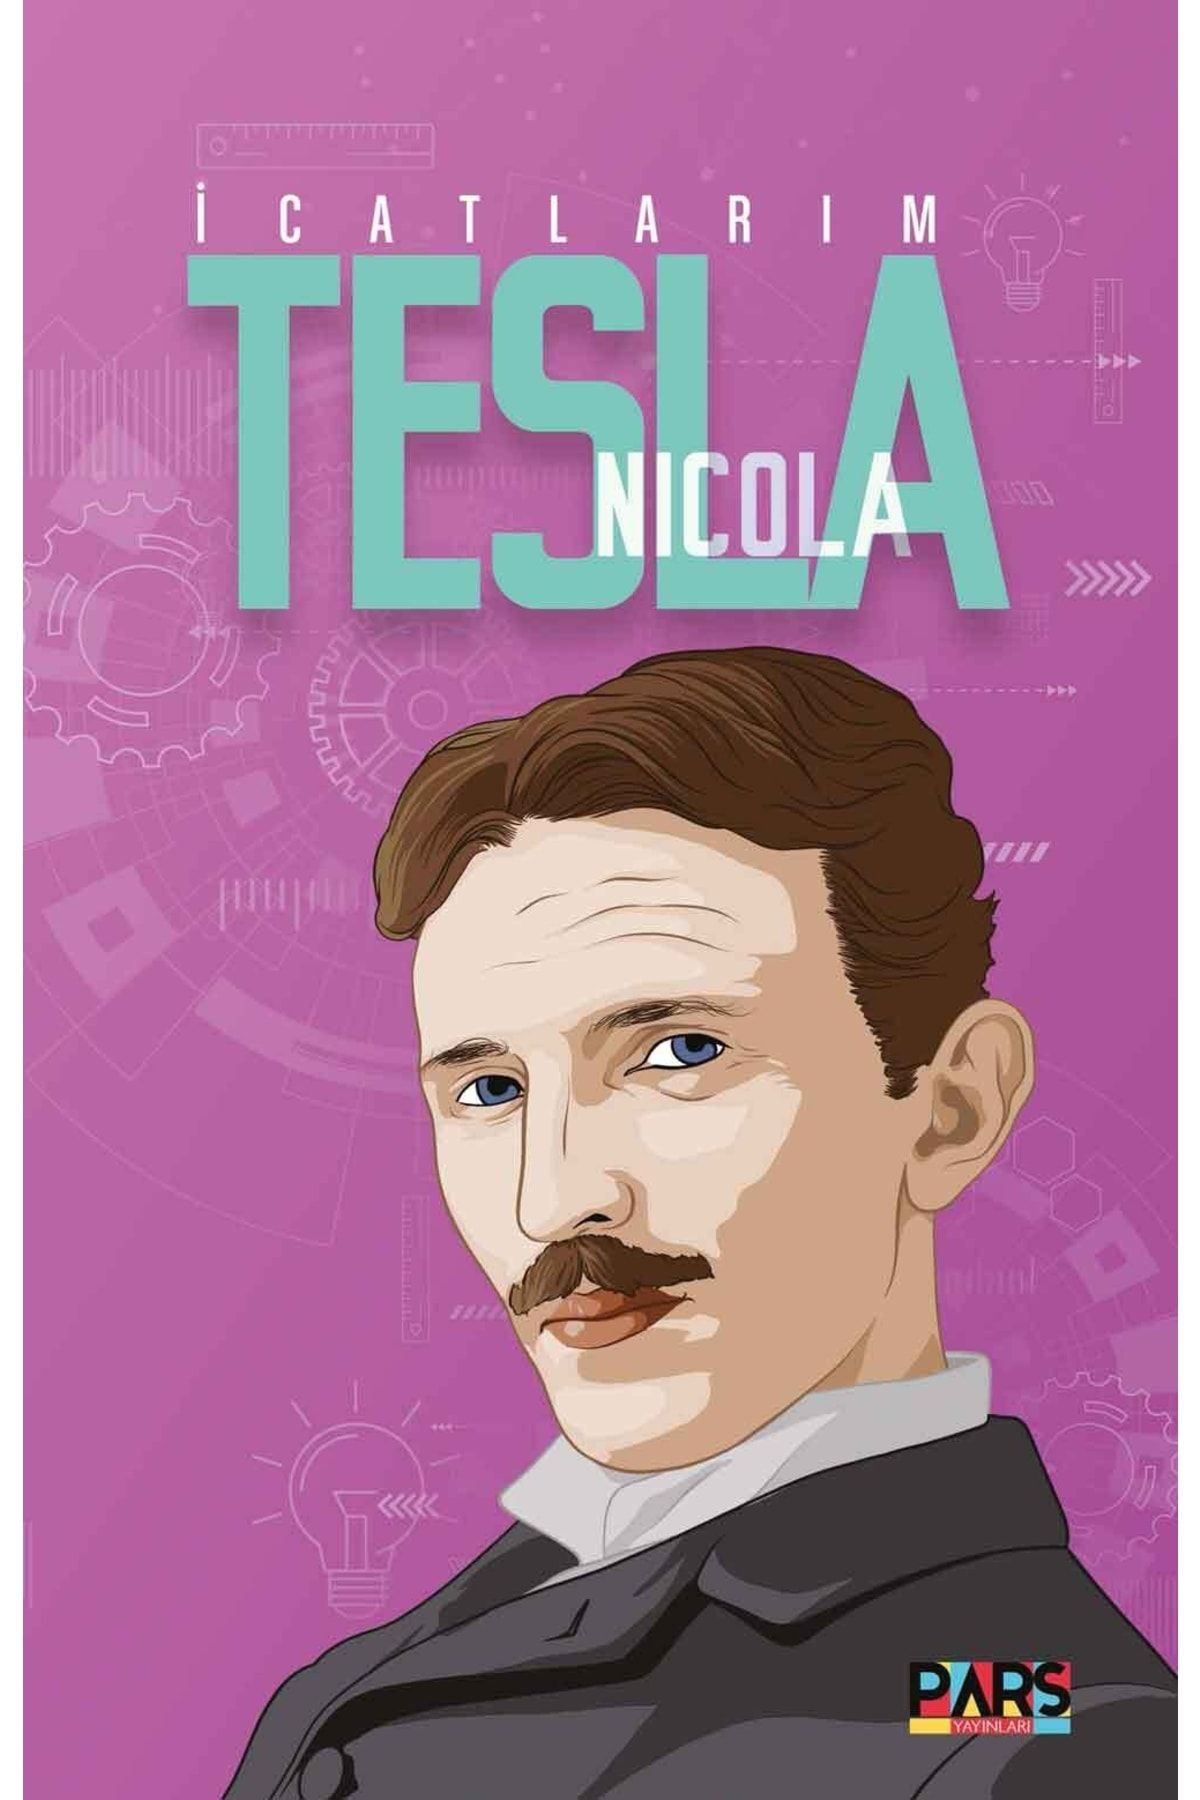 PARS yayınları Icatlarım Nikola Tesla Nikola Tesla